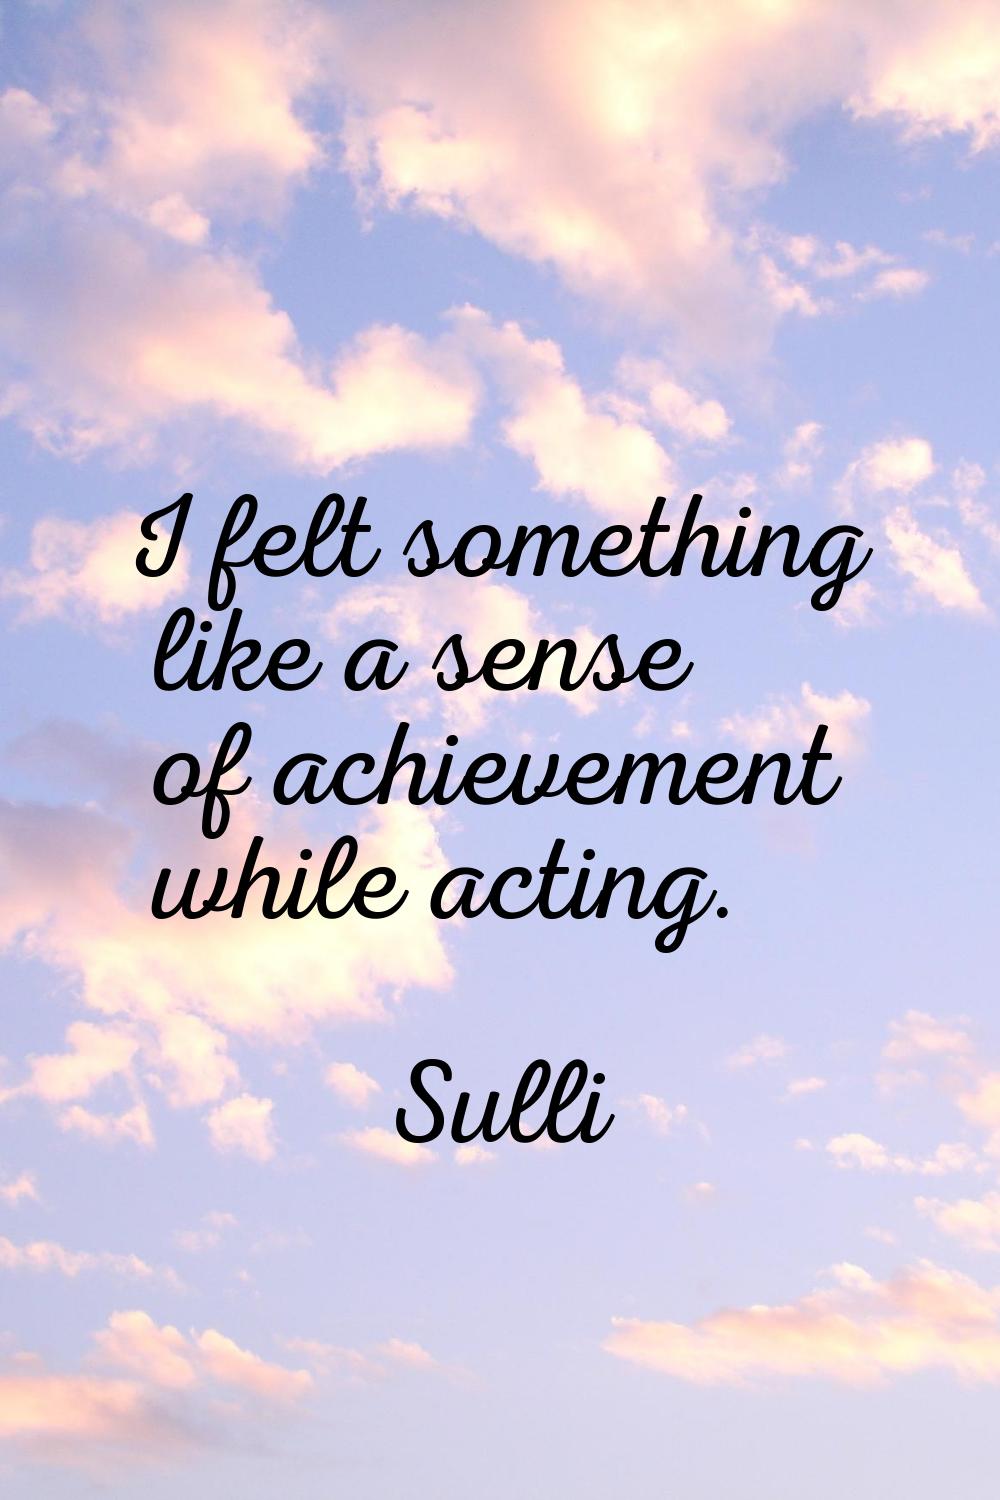 I felt something like a sense of achievement while acting.